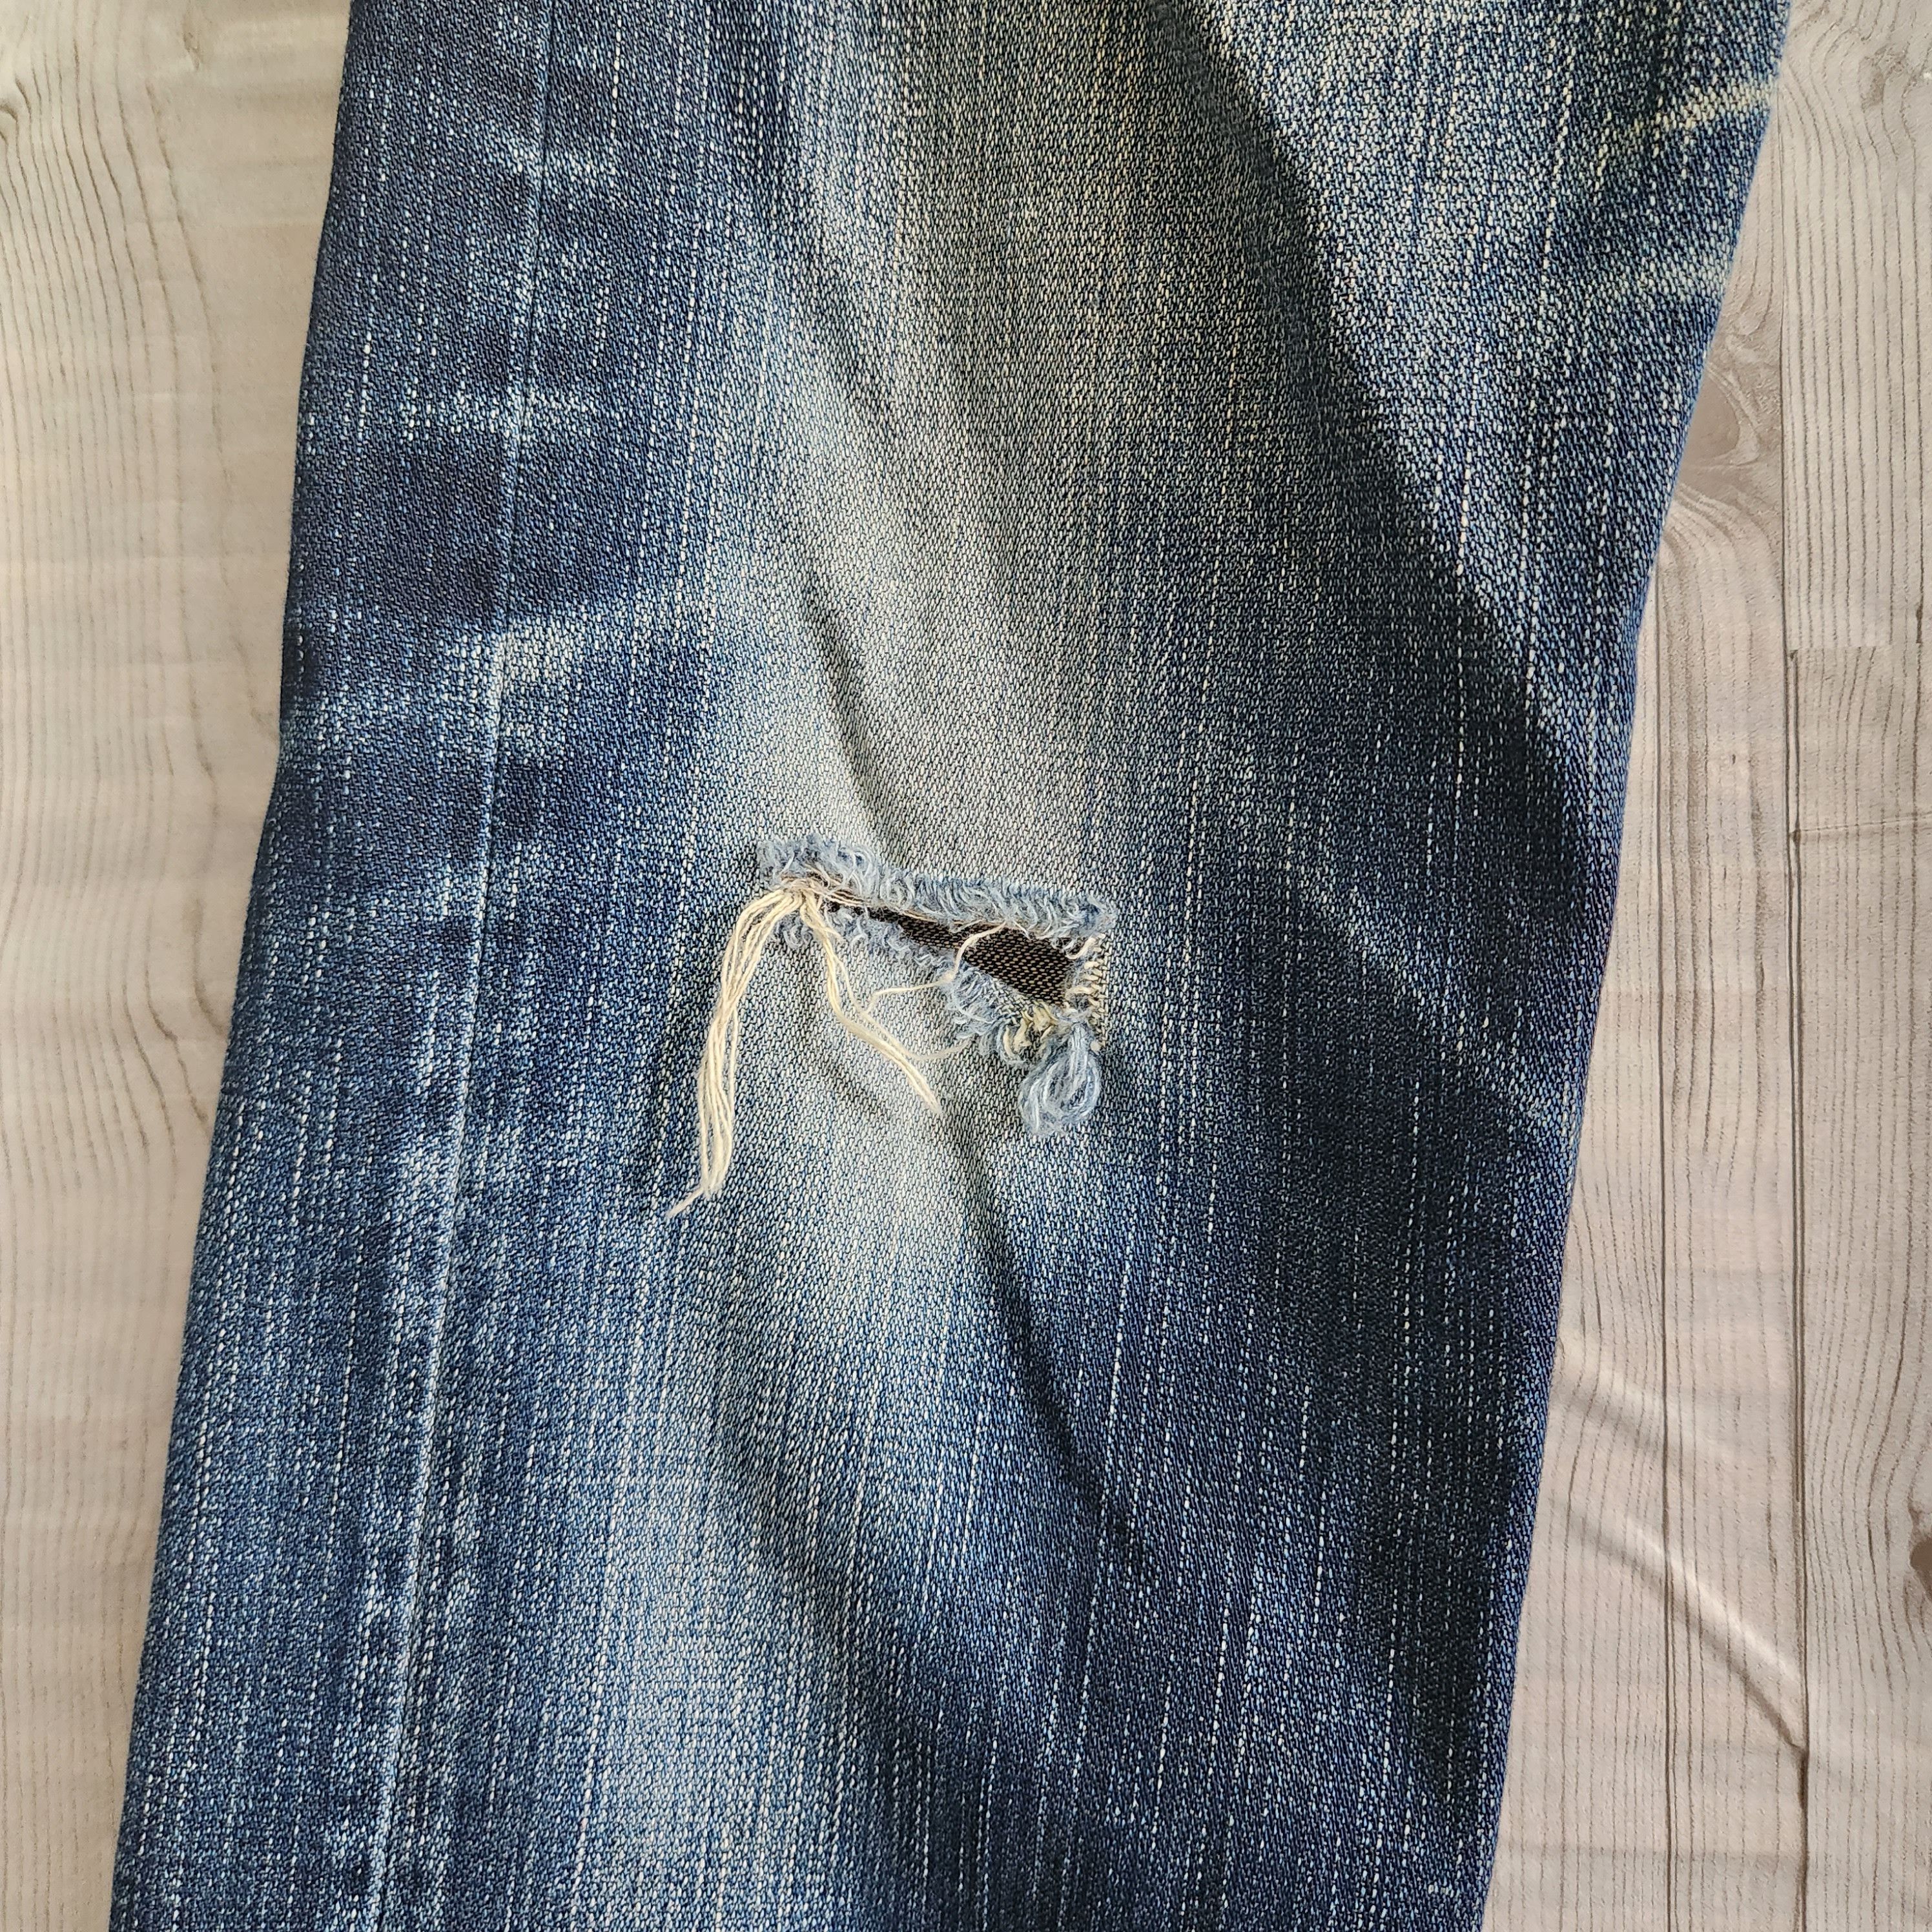 Levis 505 Premium Distressed Denim Jeans - 16